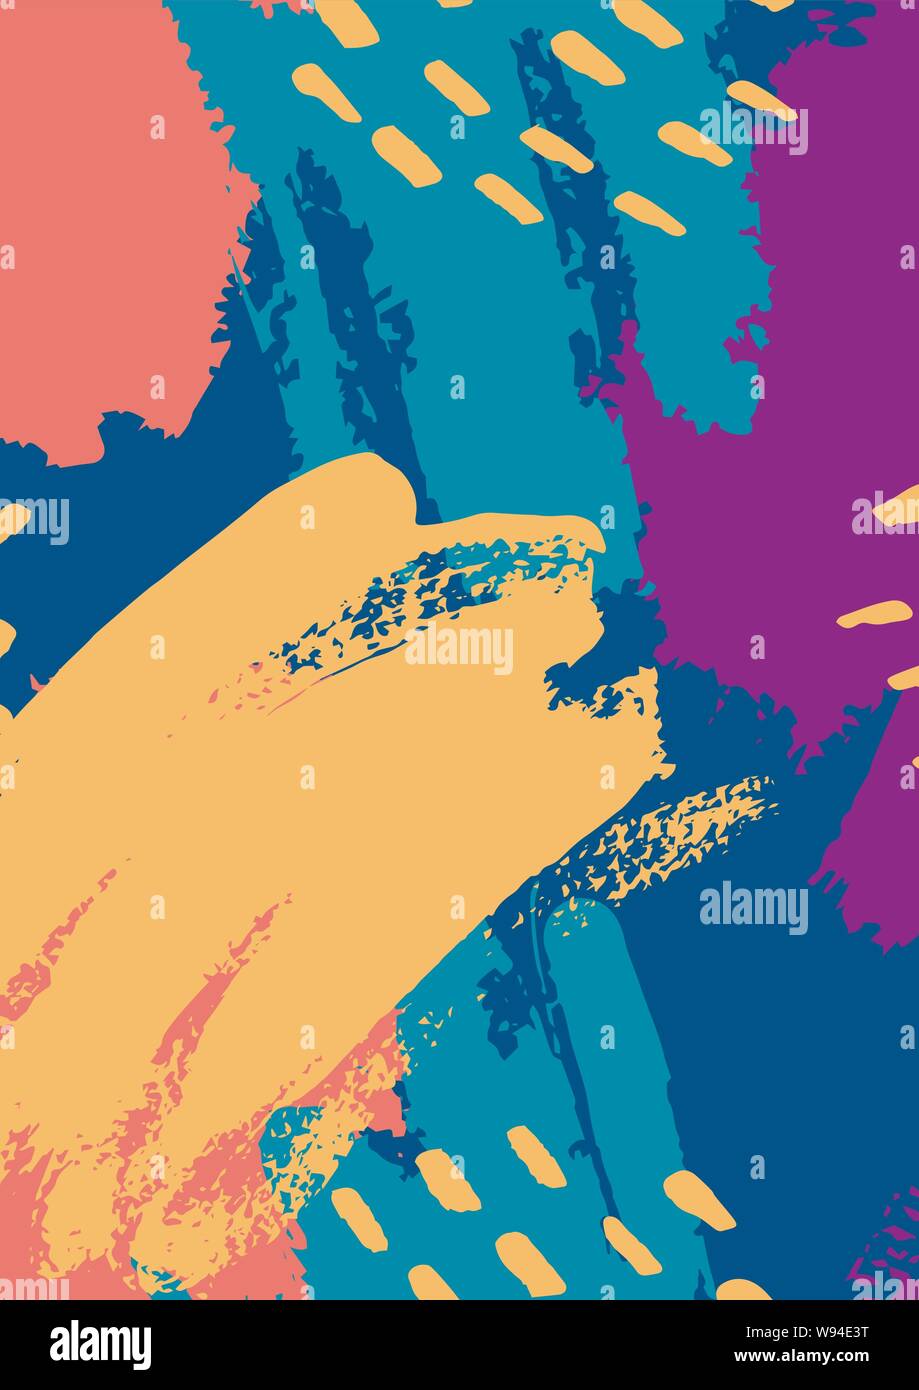 Vektor abstrakte Hintergründe der Größe A4. Die Textur Bürste in trendigen Farben Senf Anschläge, blau, lila, koralle. Vorlage für Poster, Karten, Broschüren, Stock Vektor